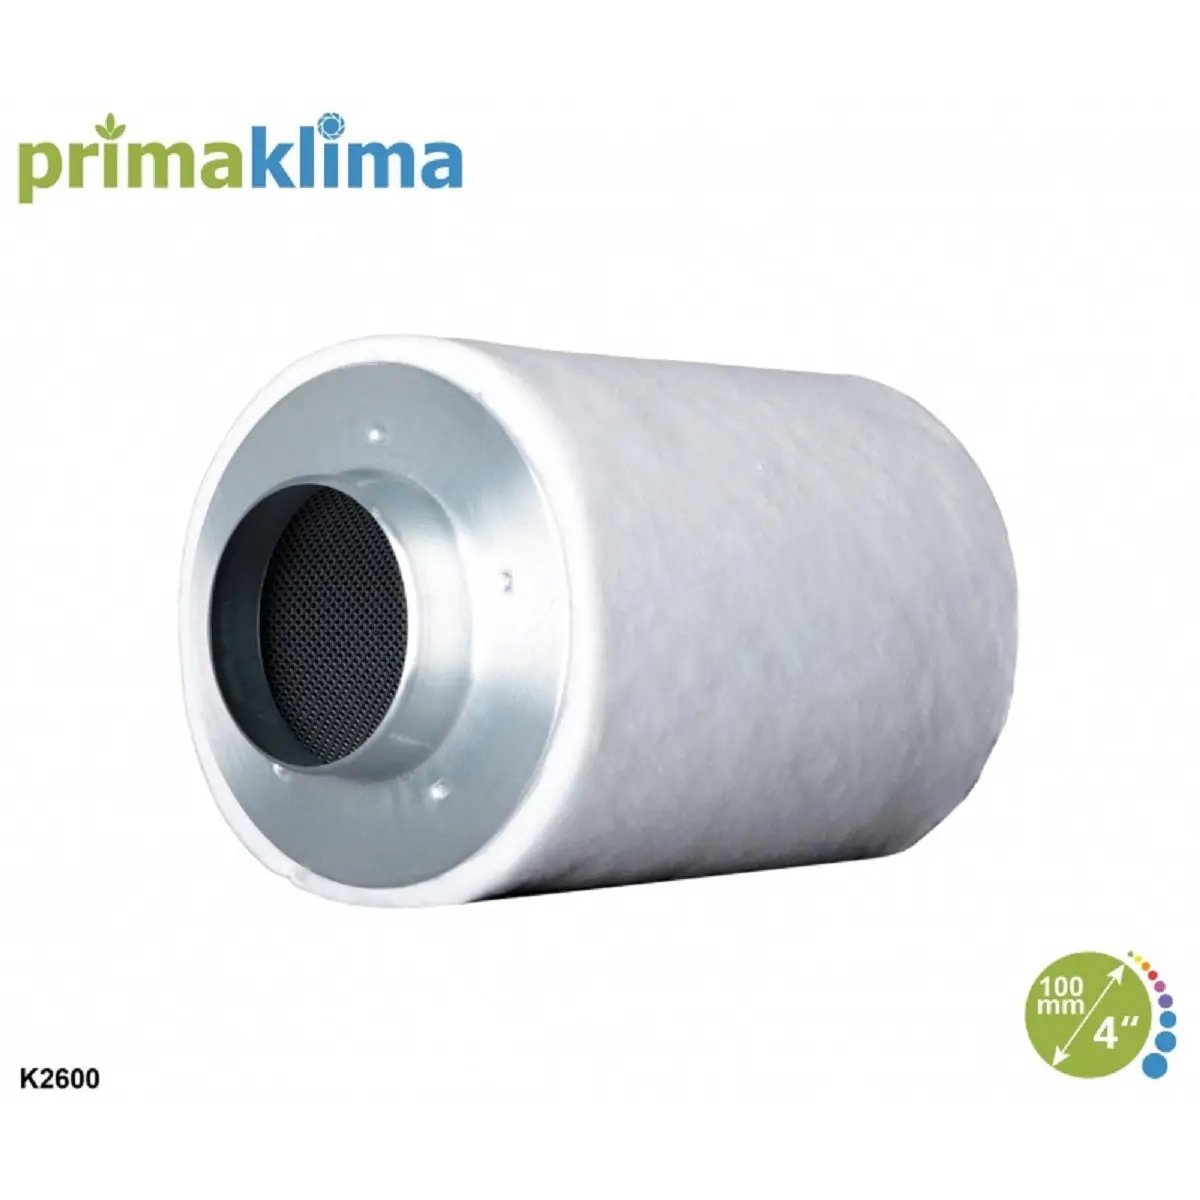 Le filtre à charbon anti odeur Prima Klima Ecoline de 100mm de diamètre